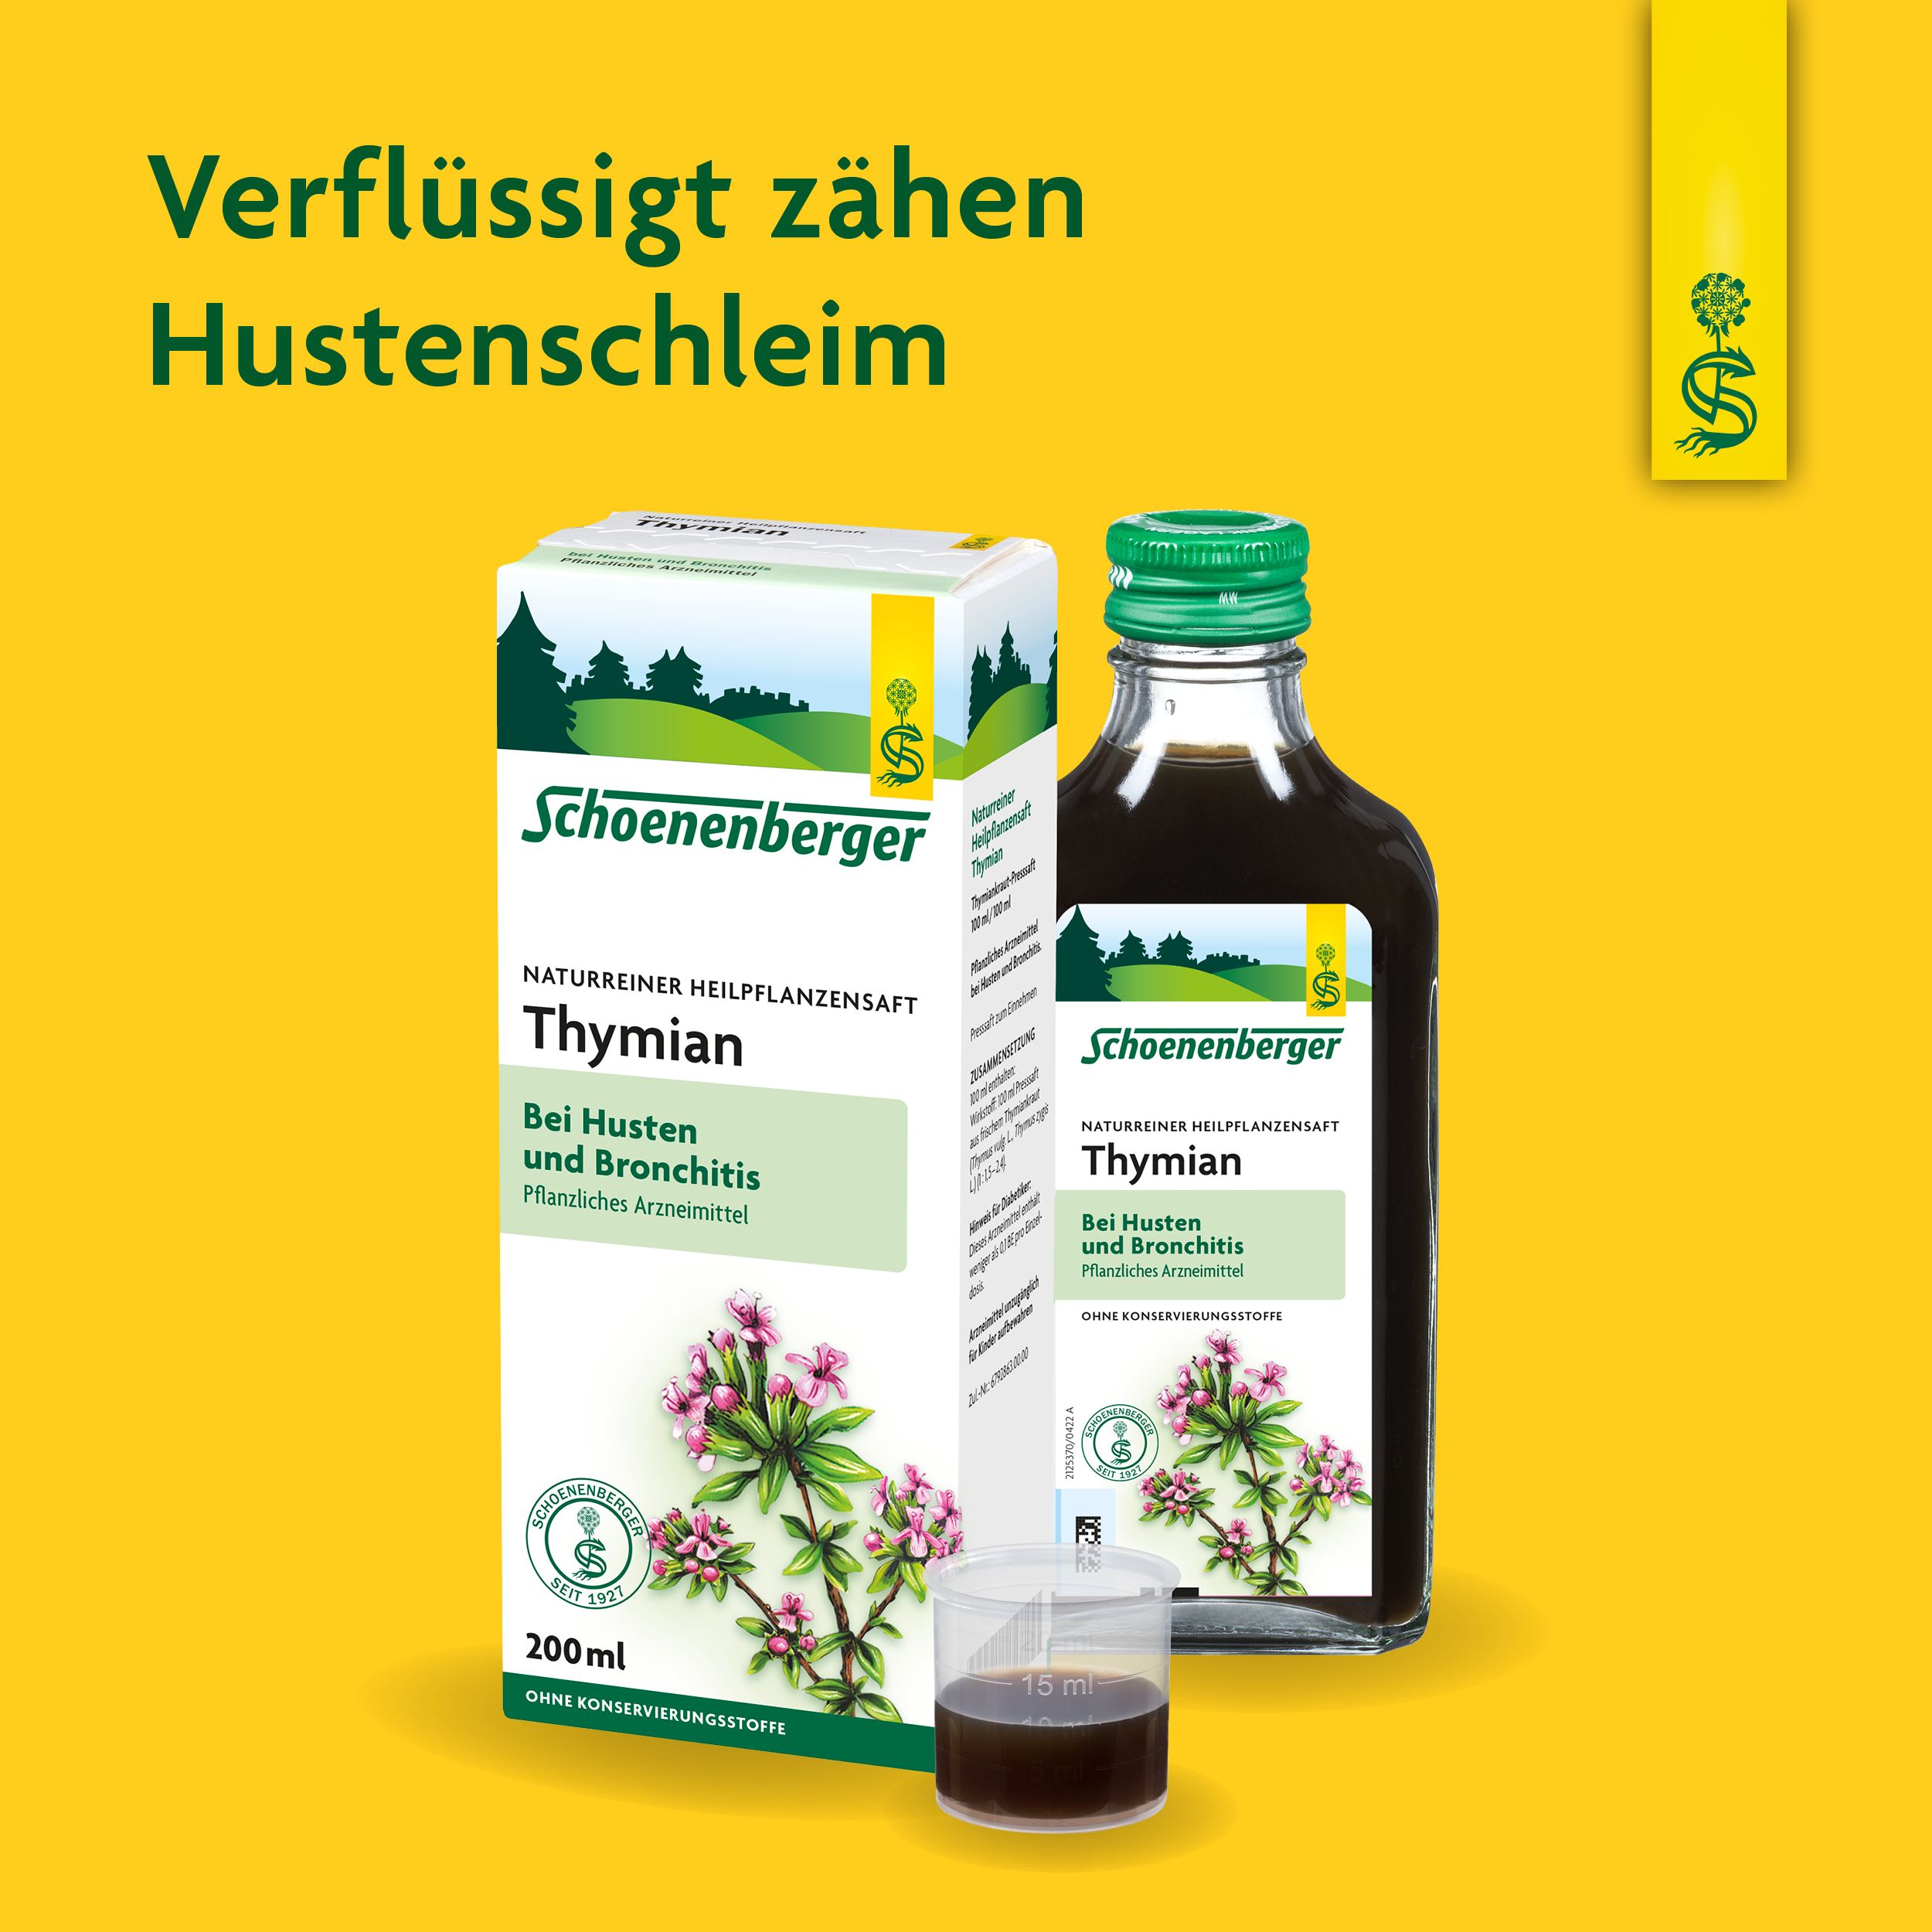 Schoenenberger® naturreiner Heilpflanzensaft Thymian